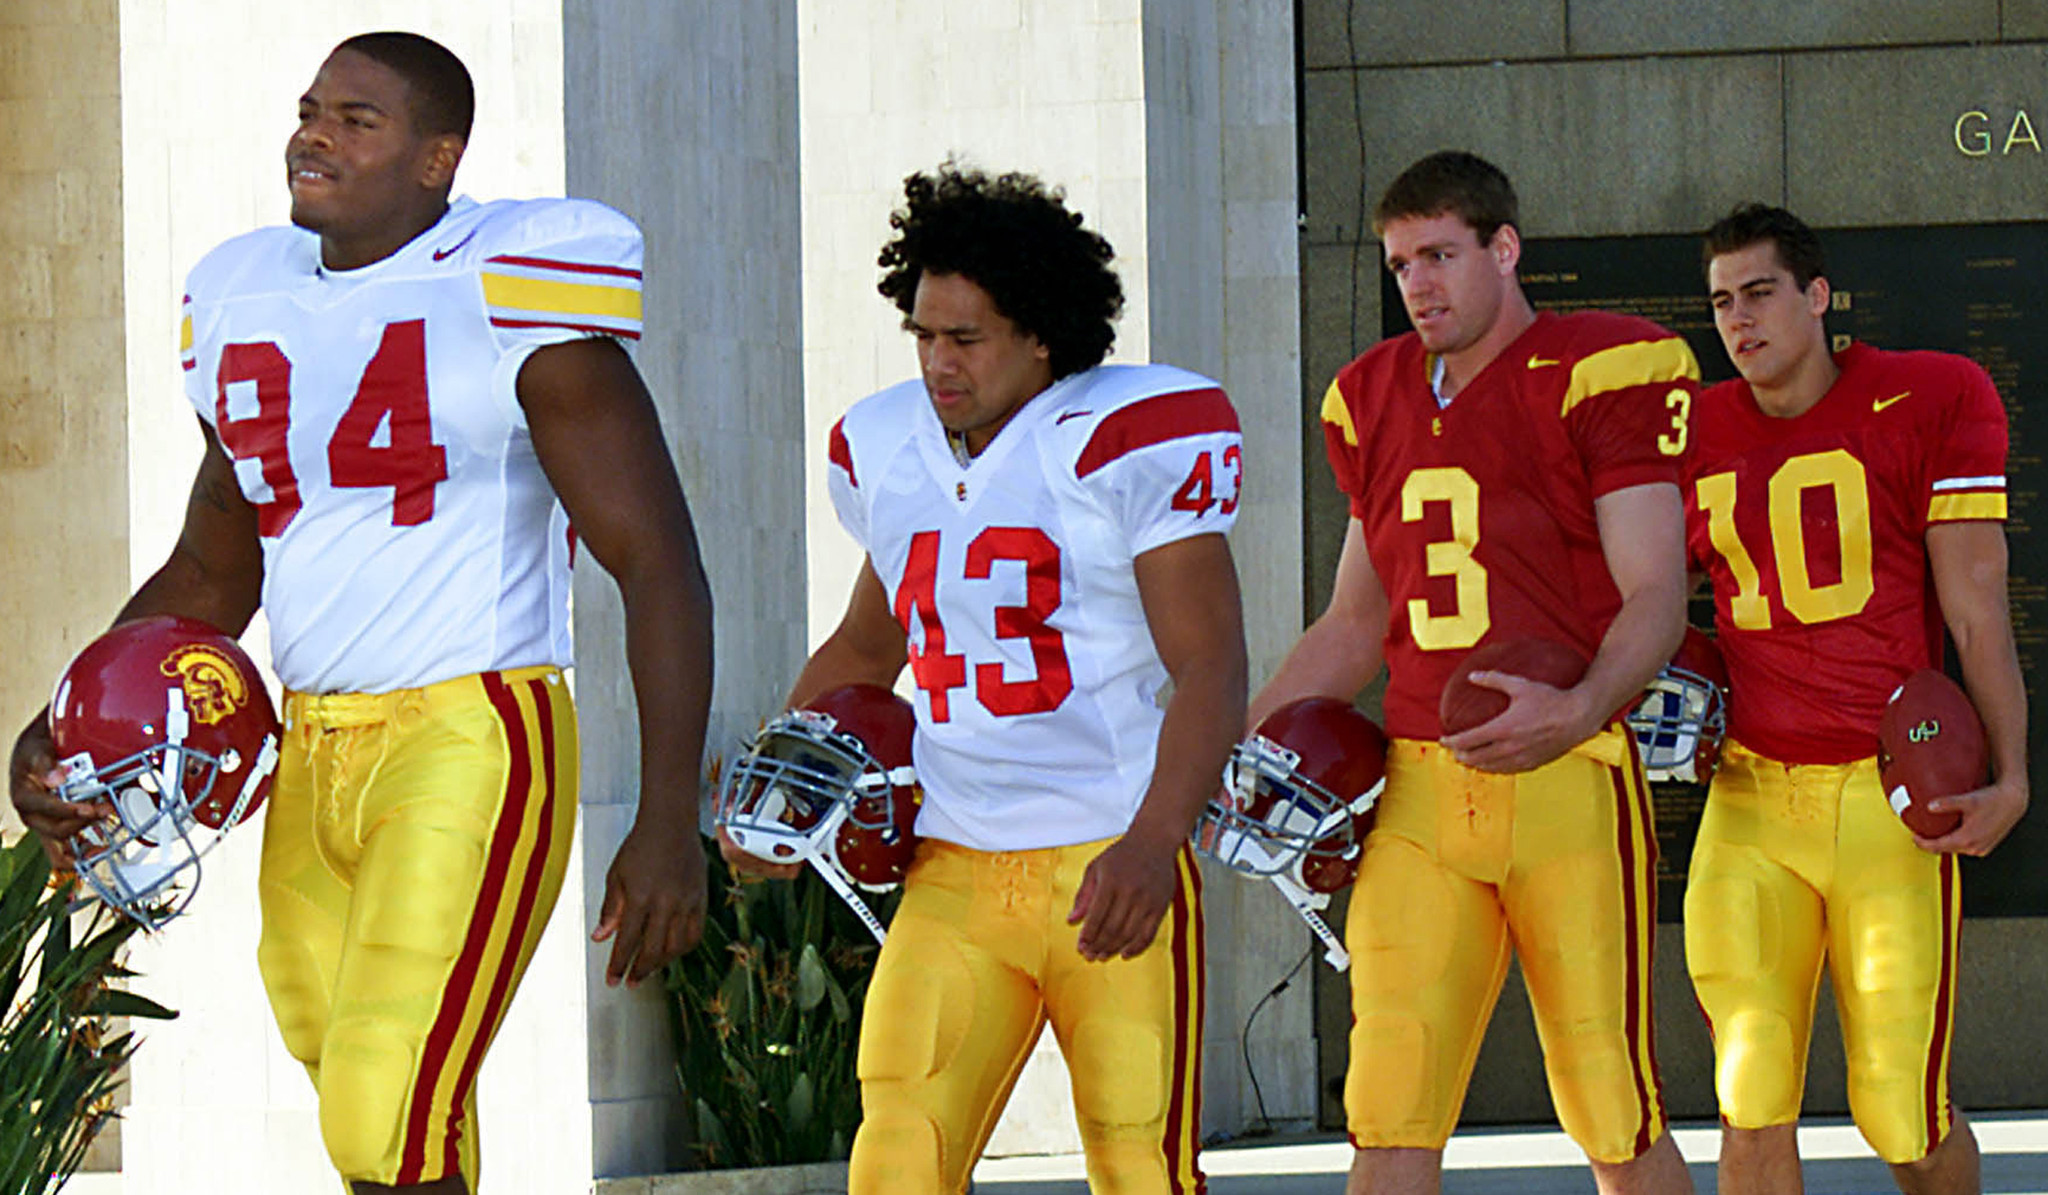 Should USC fans have open mind about Trojans' uniforms? - LA Times